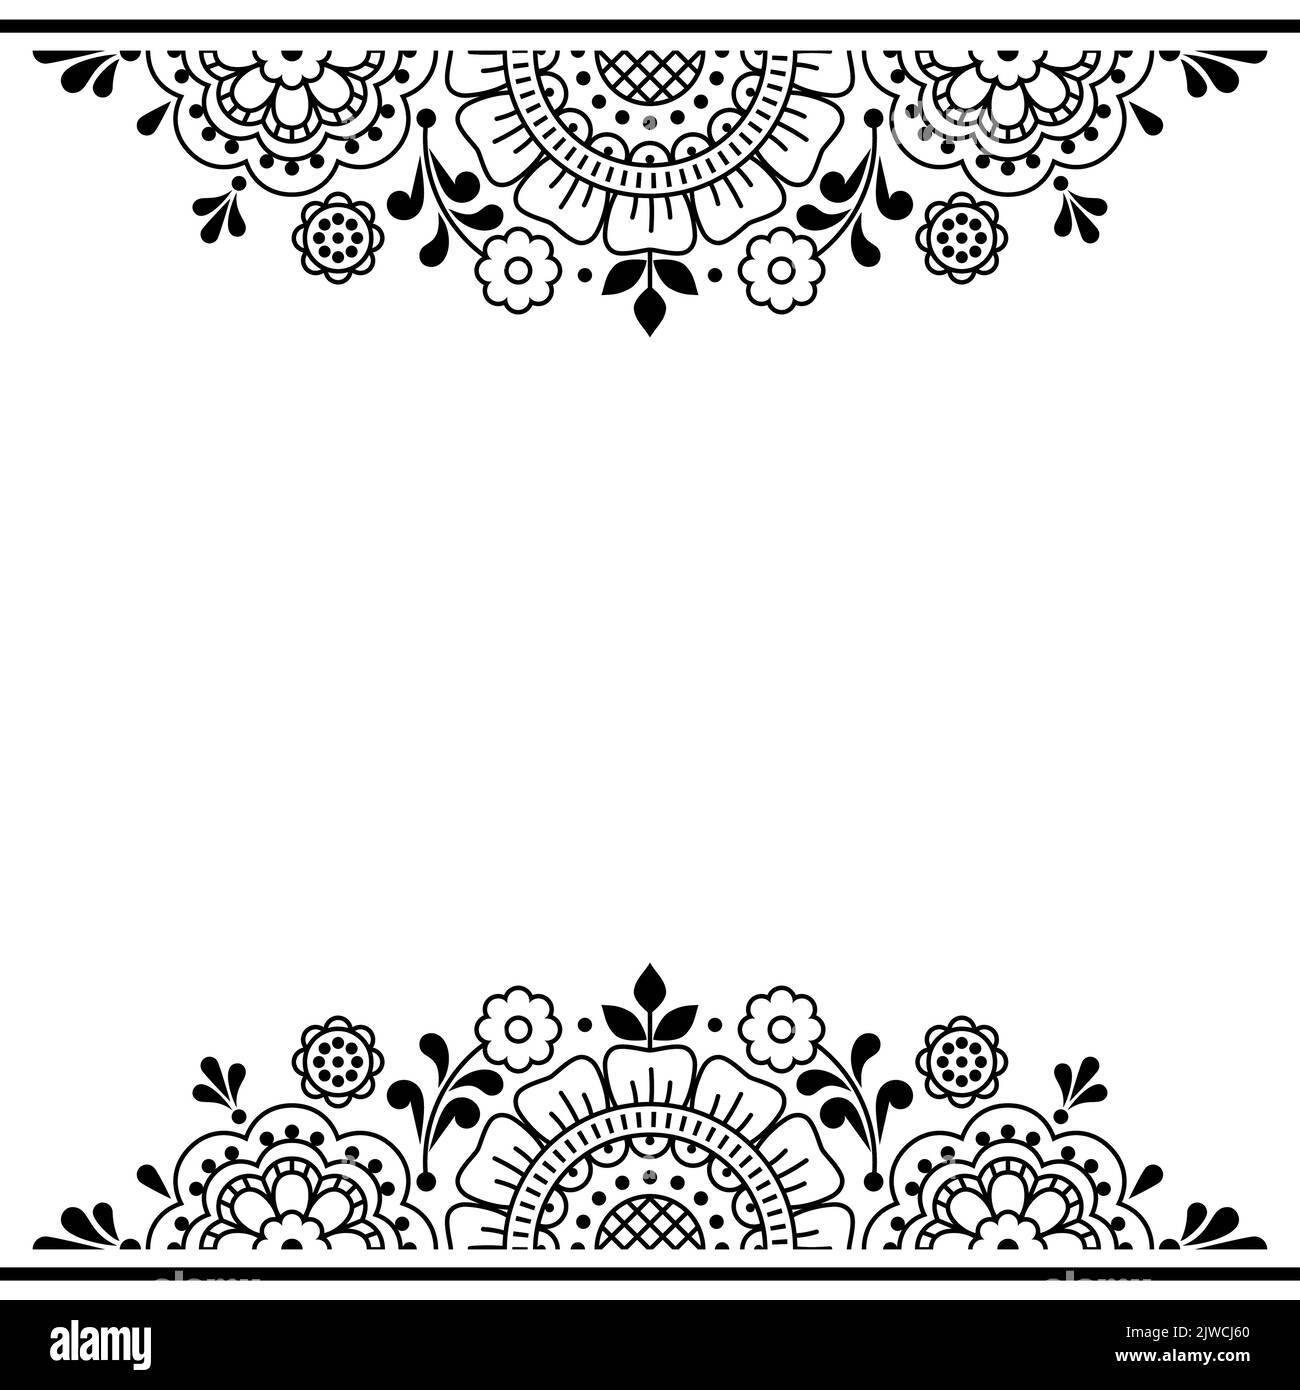 Blumen Folk Umriss Vektor Grußkarte oder Hochzeit Einladungsmuster mit Blumen und Rahmen, niedlichen skandinavischen Rahmen oder Bordüre Muster in schwarz und Stock Vektor